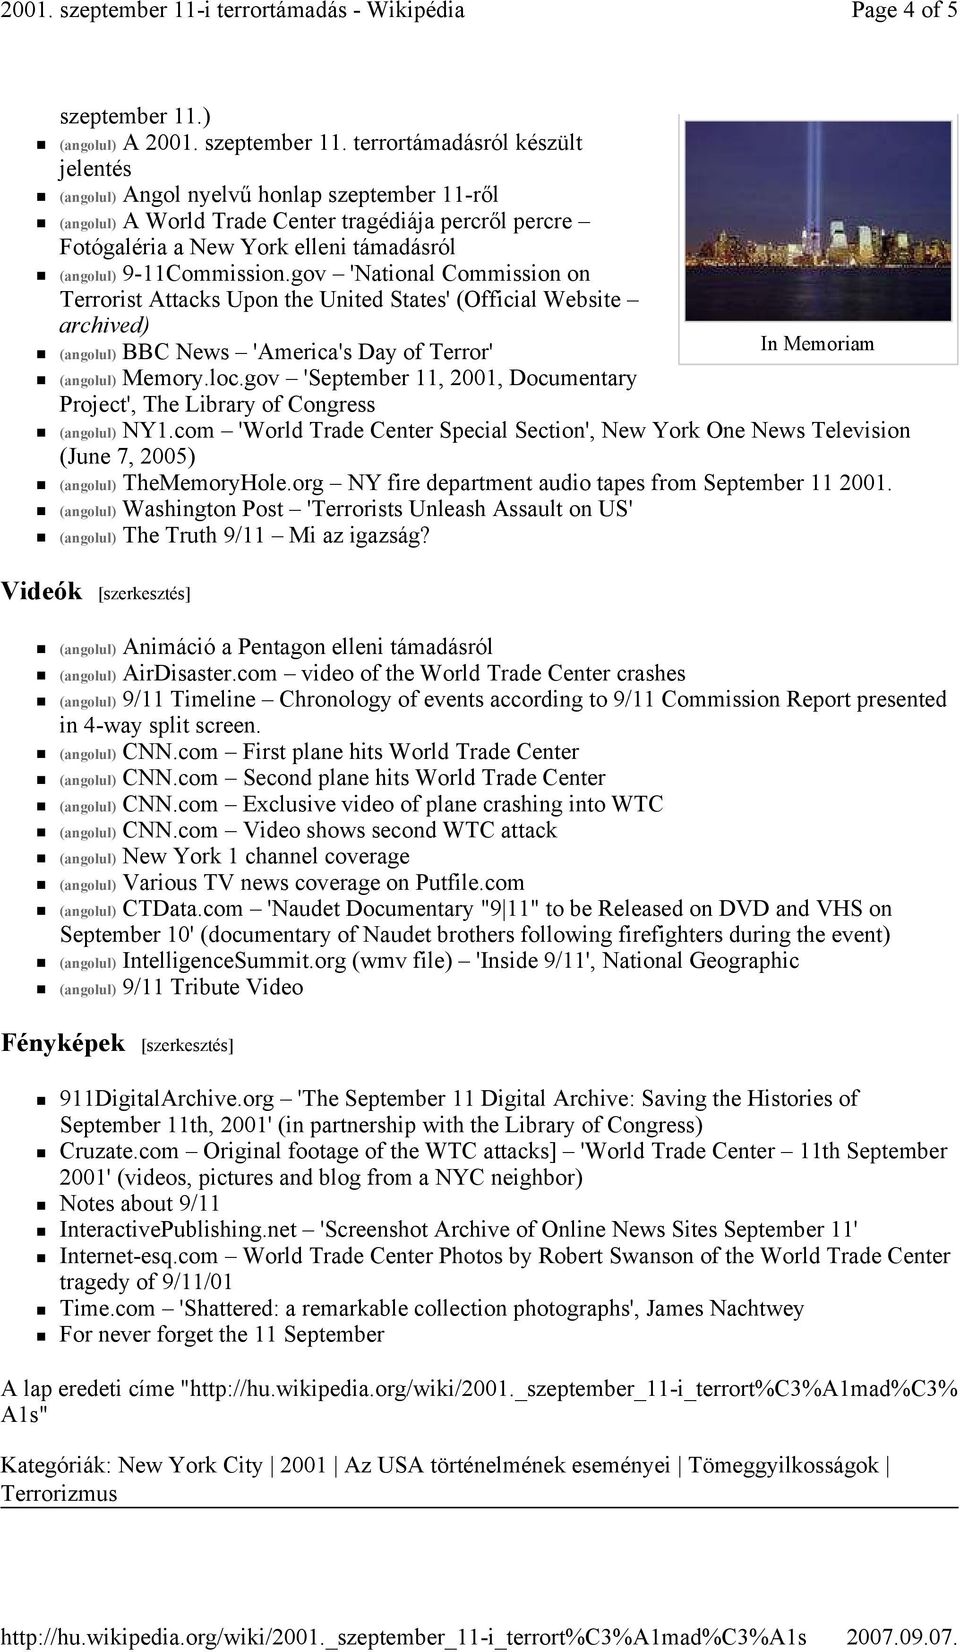 2001. szeptember 11-i terrortámadás [szerkesztés] - PDF Ingyenes letöltés